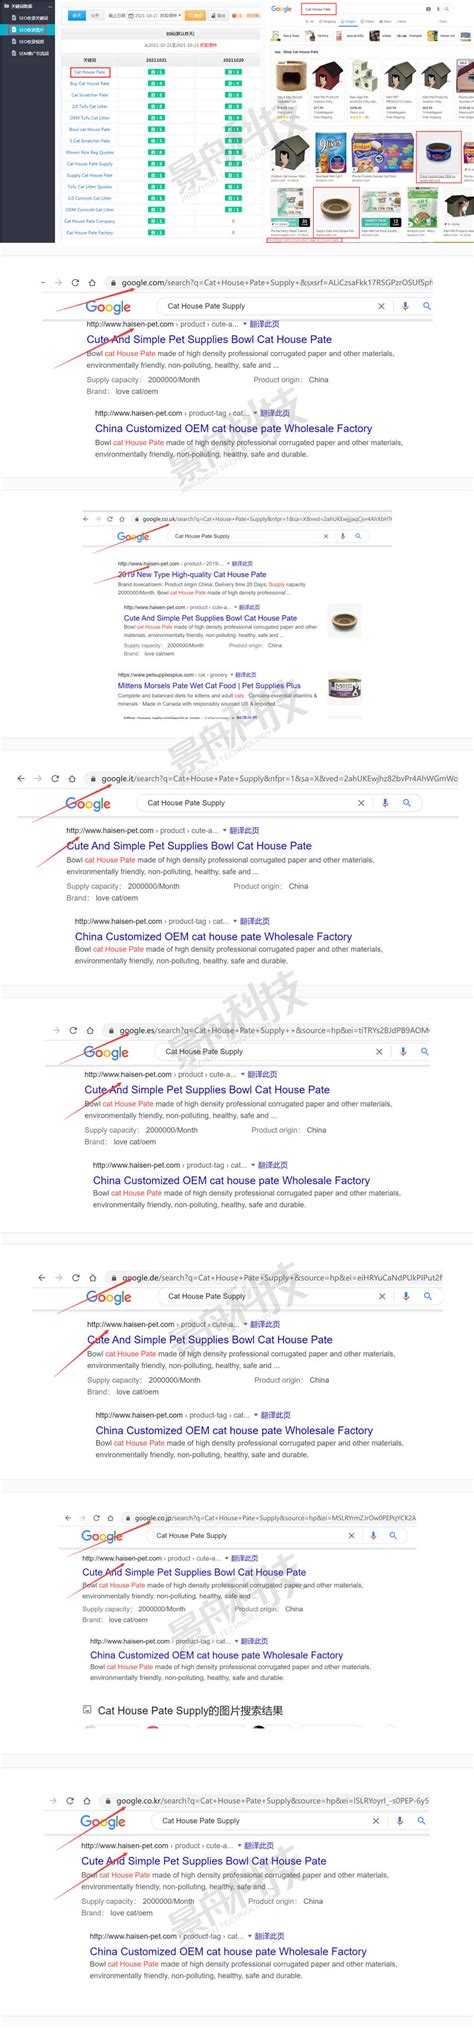 外贸seo推广方法有哪些？Google海外营销推广技巧 - 拼客号